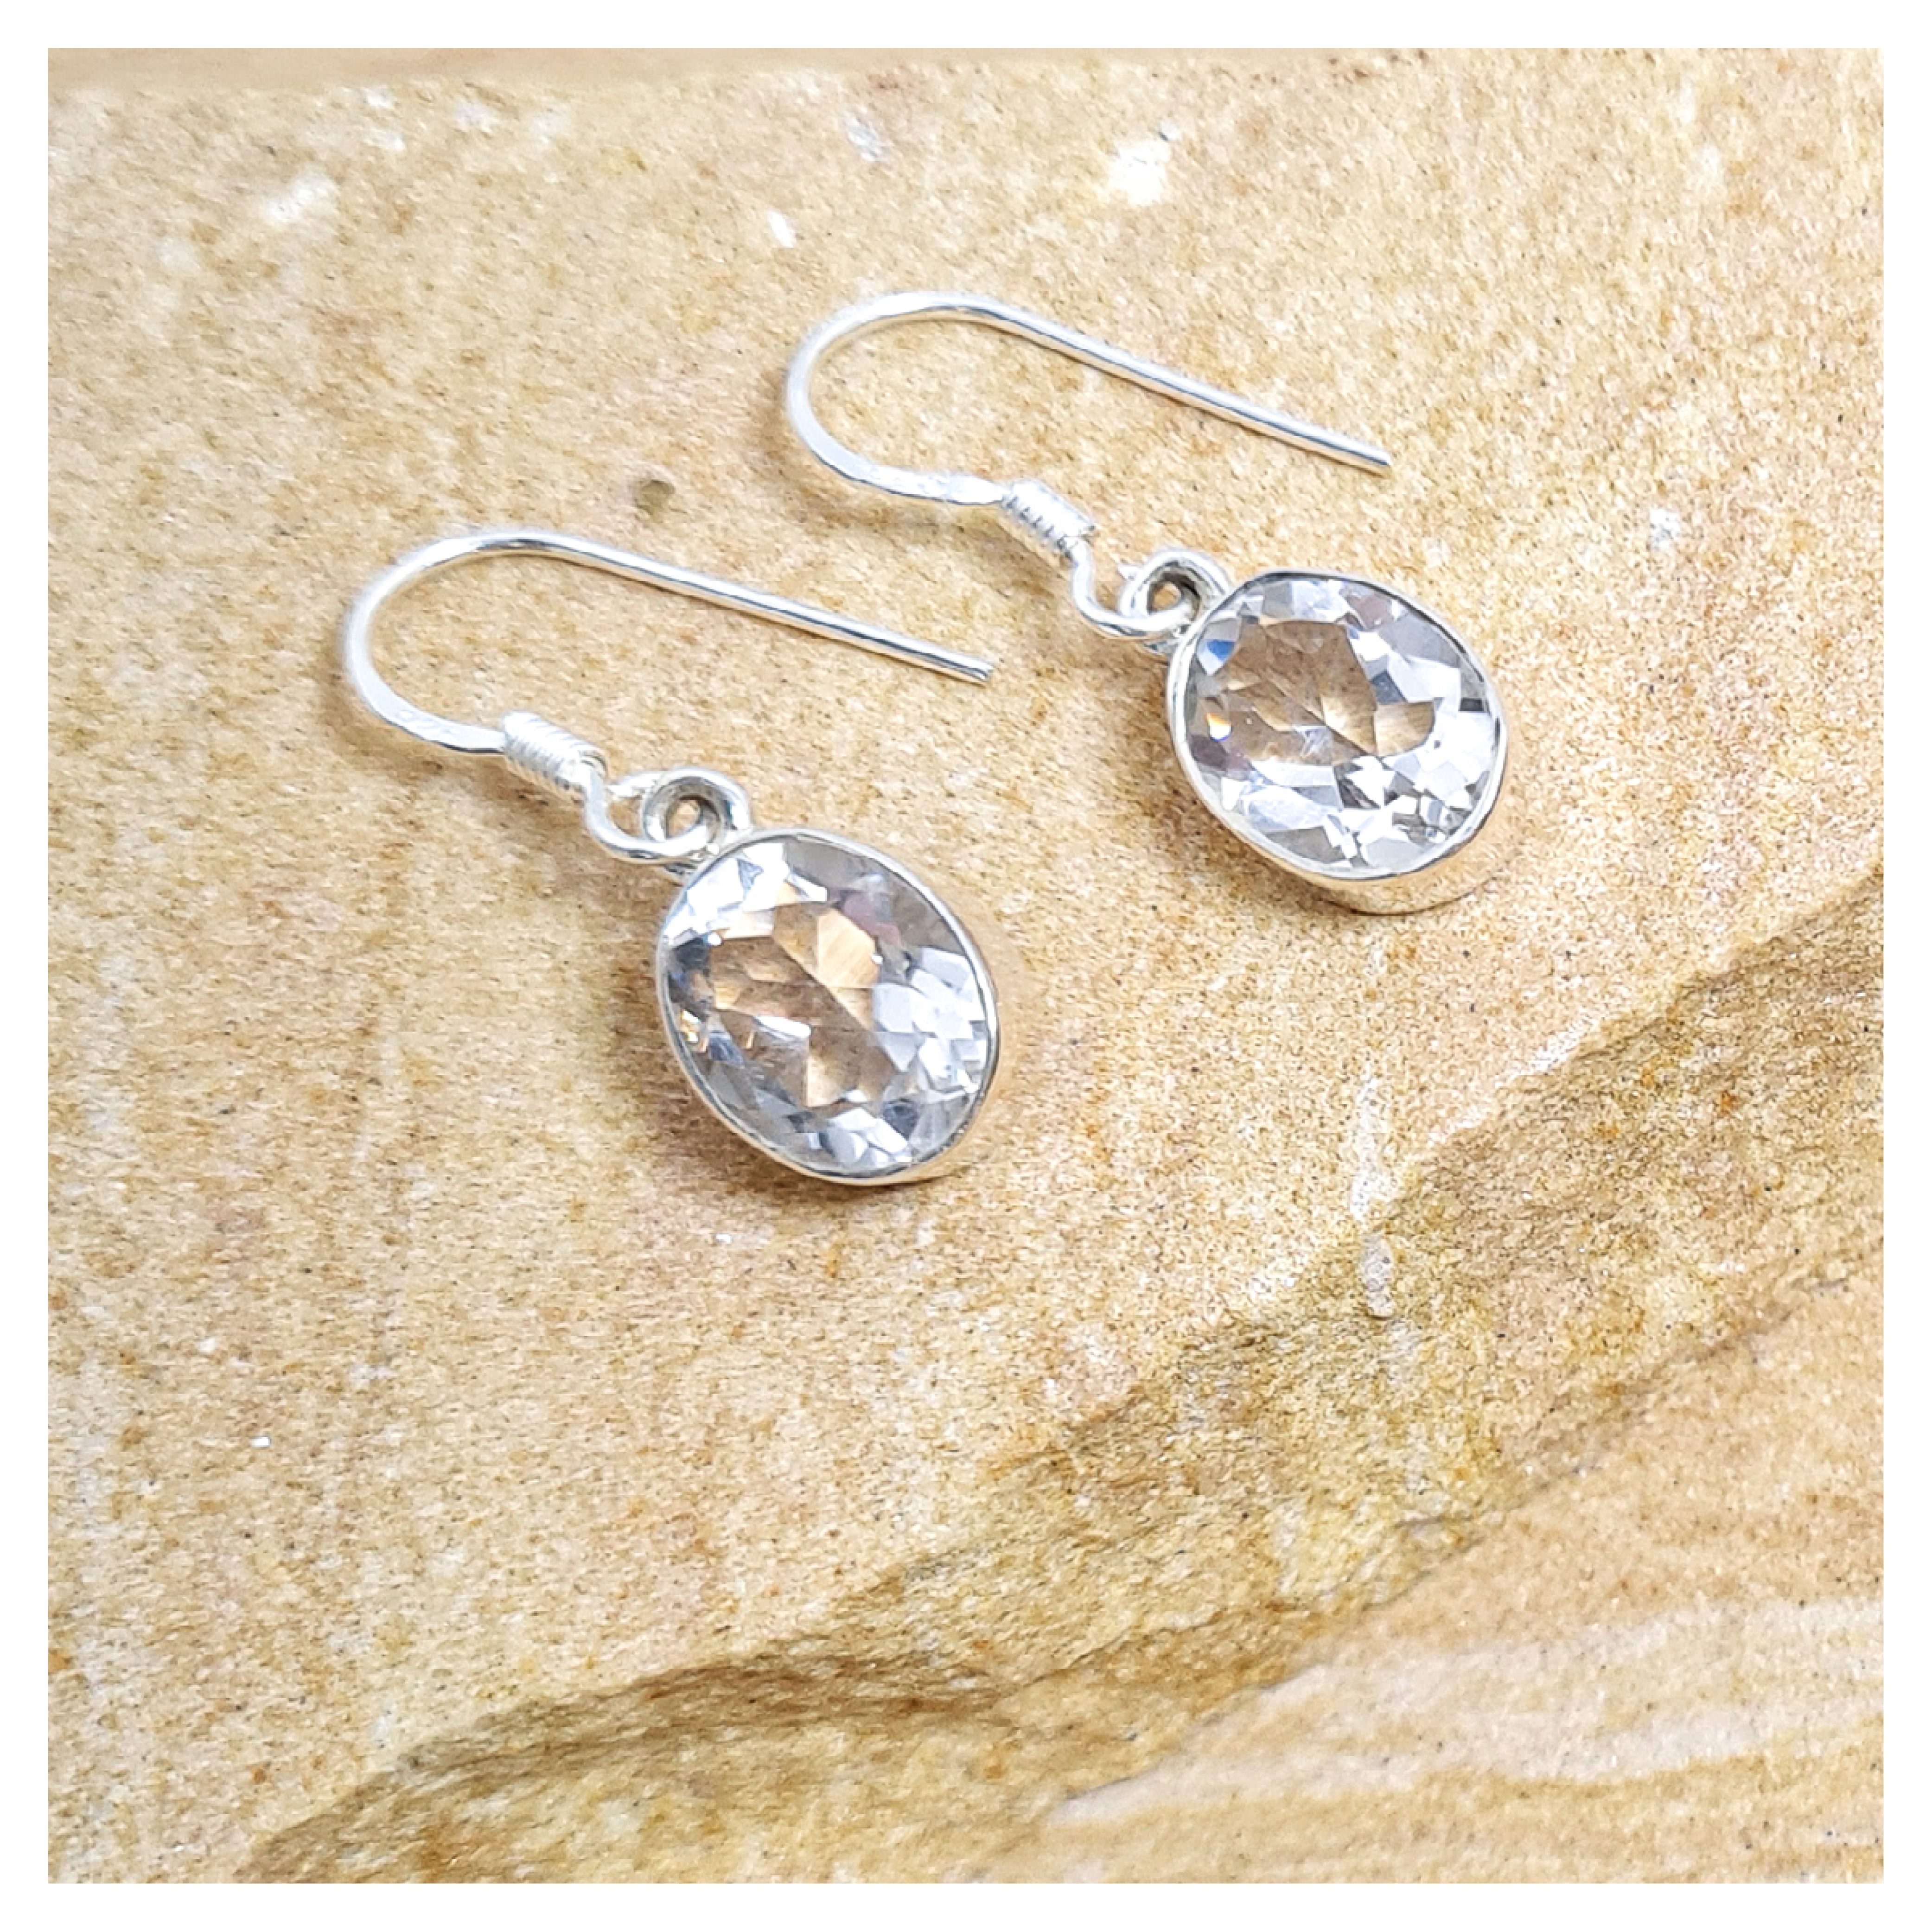 Clear quartz oval hook earrings in sterling silver